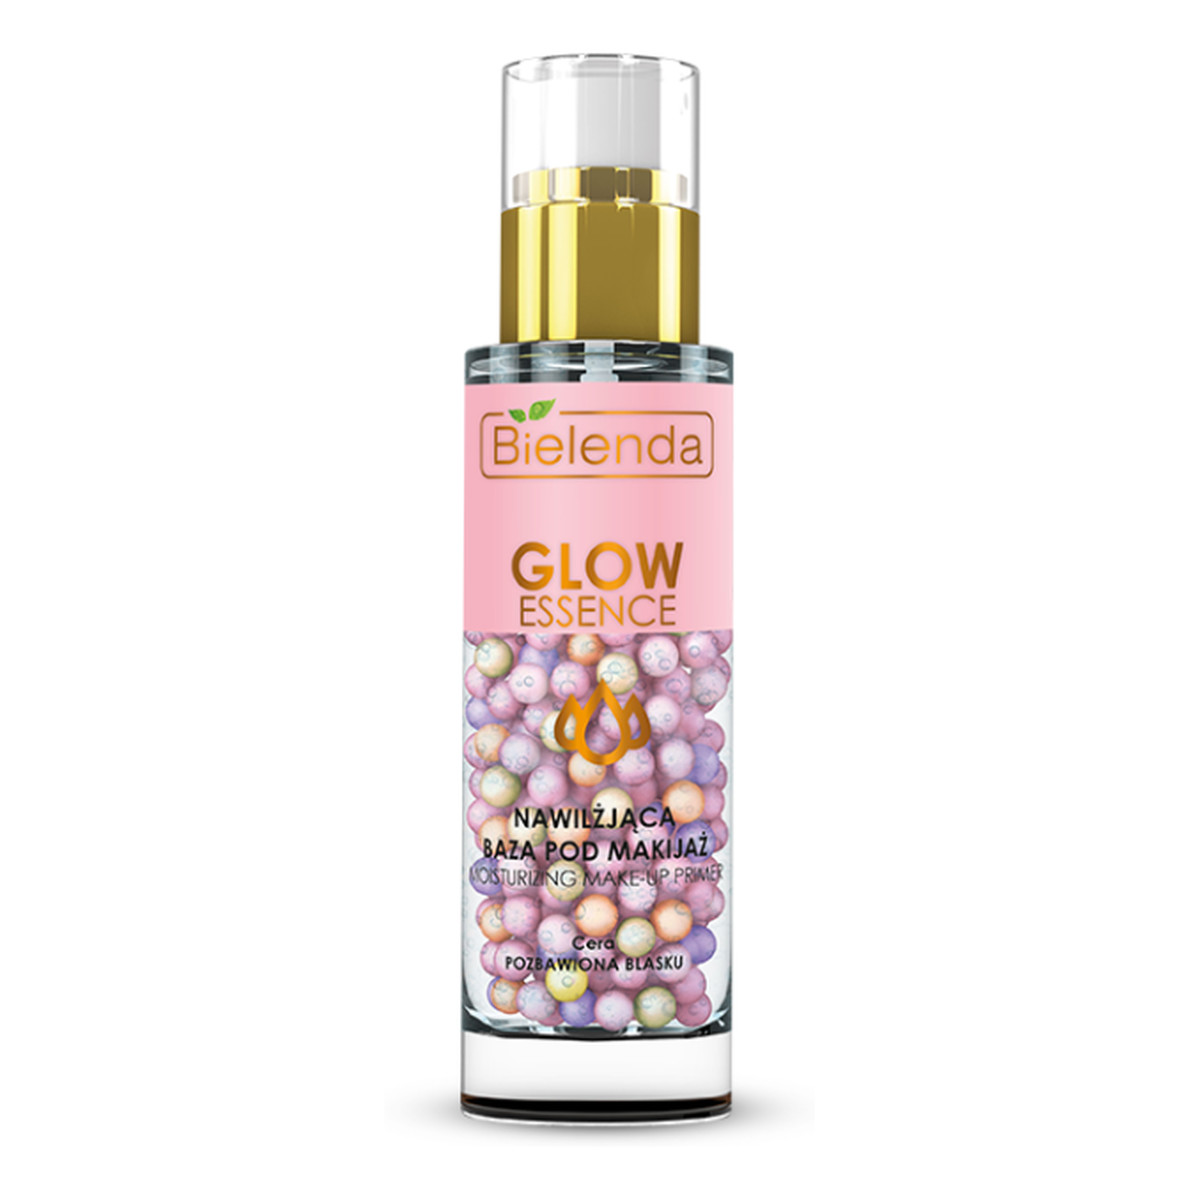 Bielenda Glow Essence perłowa nawilżająca baza pod makijaż 30g